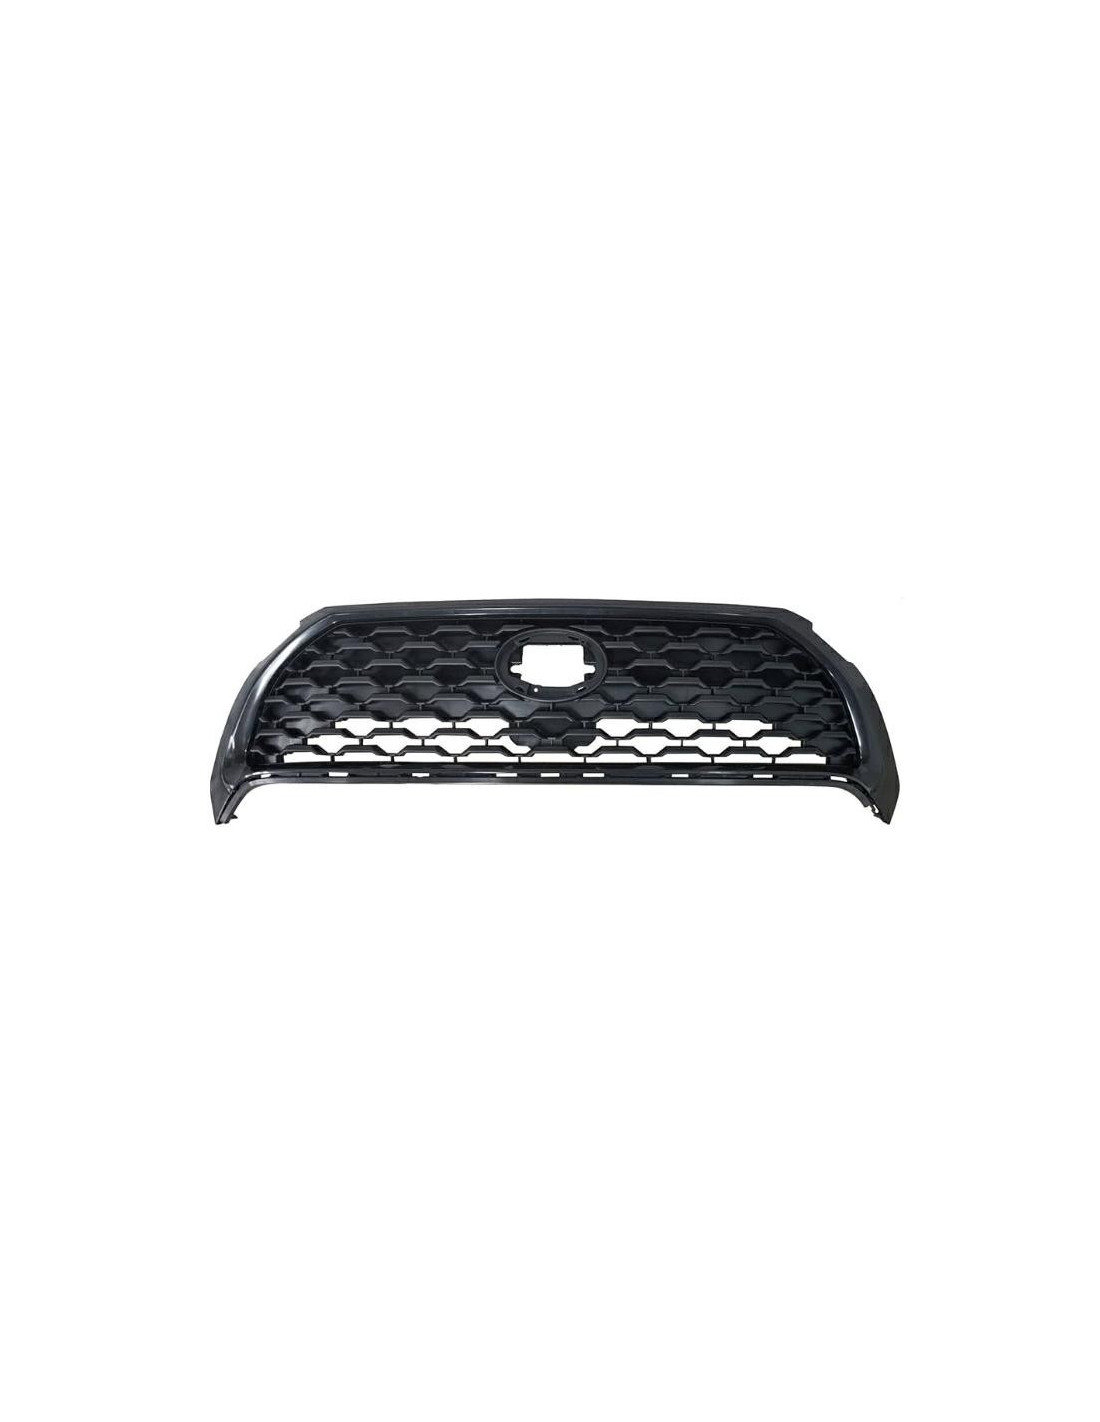 Frontgrillmaske glänzend schwarzer Rahmen für Toyota Corolla Cross 2020